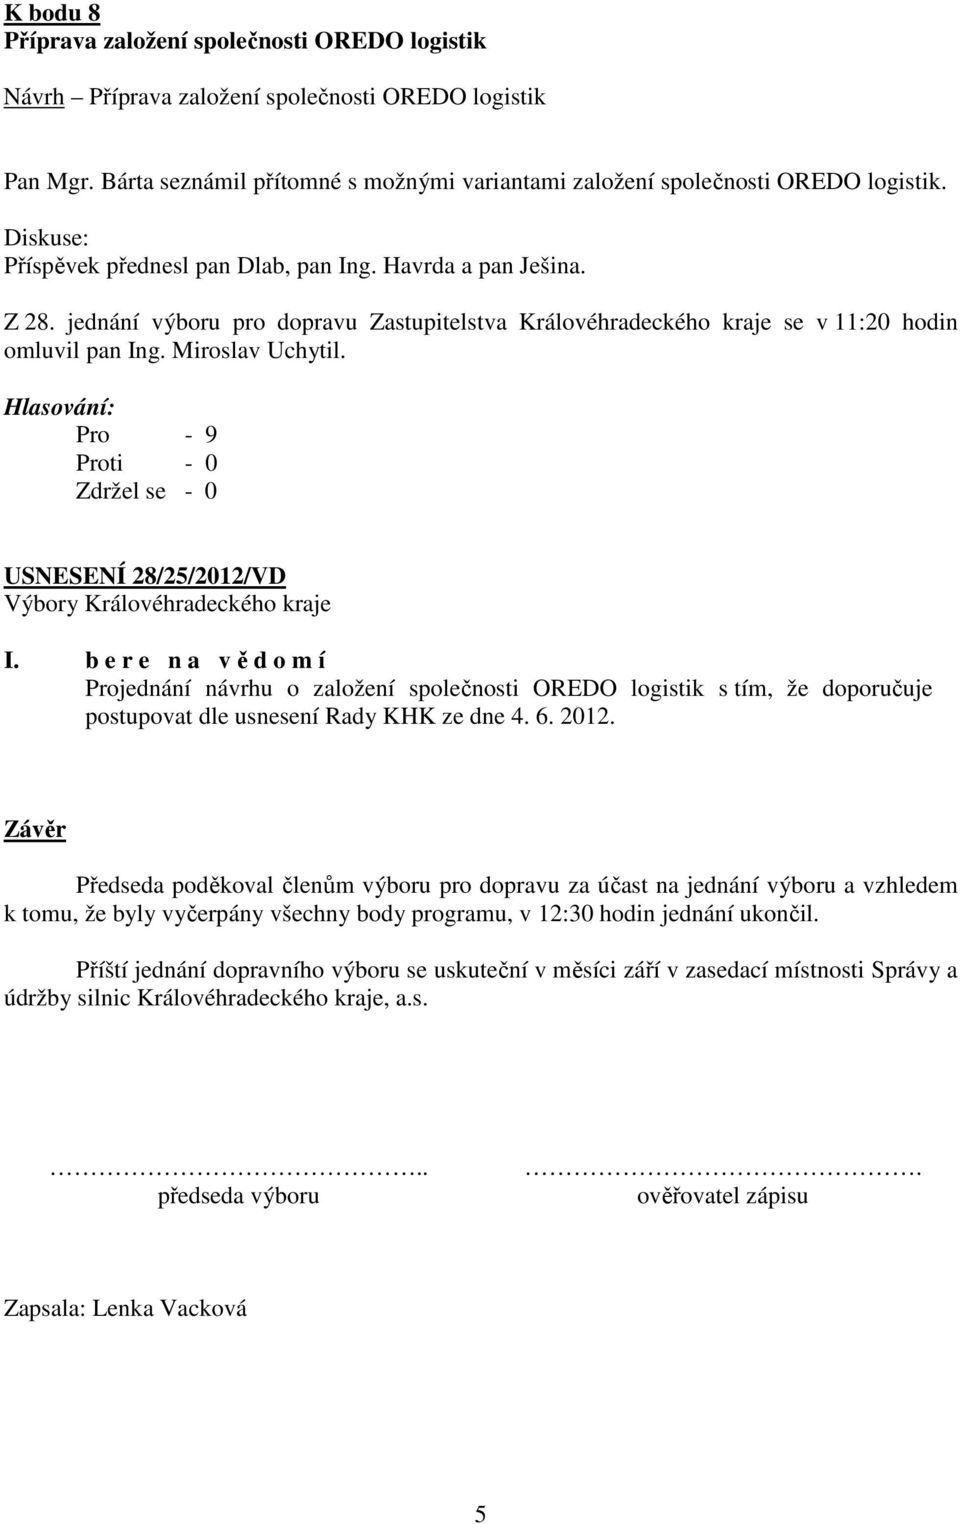 Pro - 9 USNESENÍ 28/25/2012/VD Projednání návrhu o založení společnosti OREDO logistik s tím, že doporučuje postupovat dle usnesení Rady KHK ze dne 4. 6. 2012.